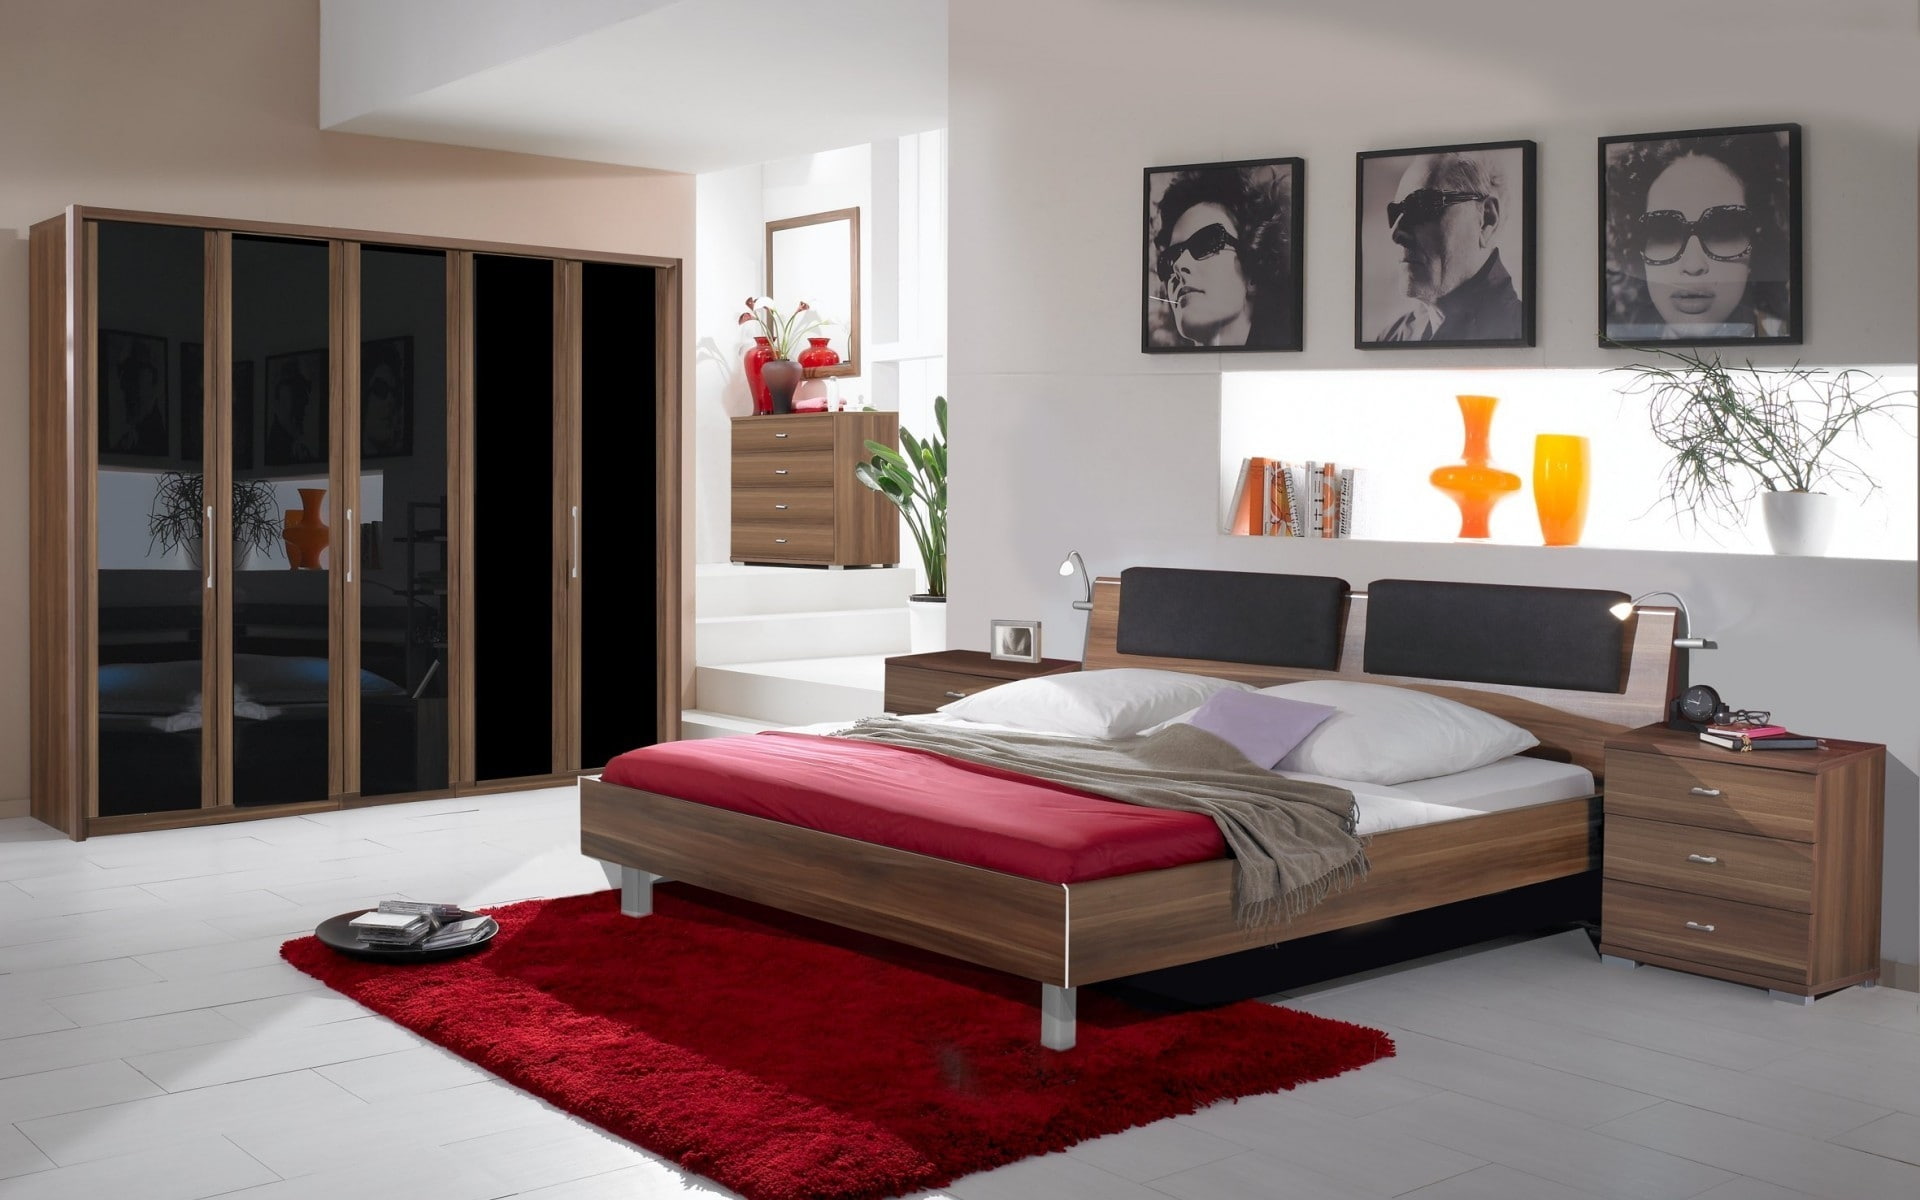 New Modern Bedroom, 2013 furniture, 2013 bedroom, home design